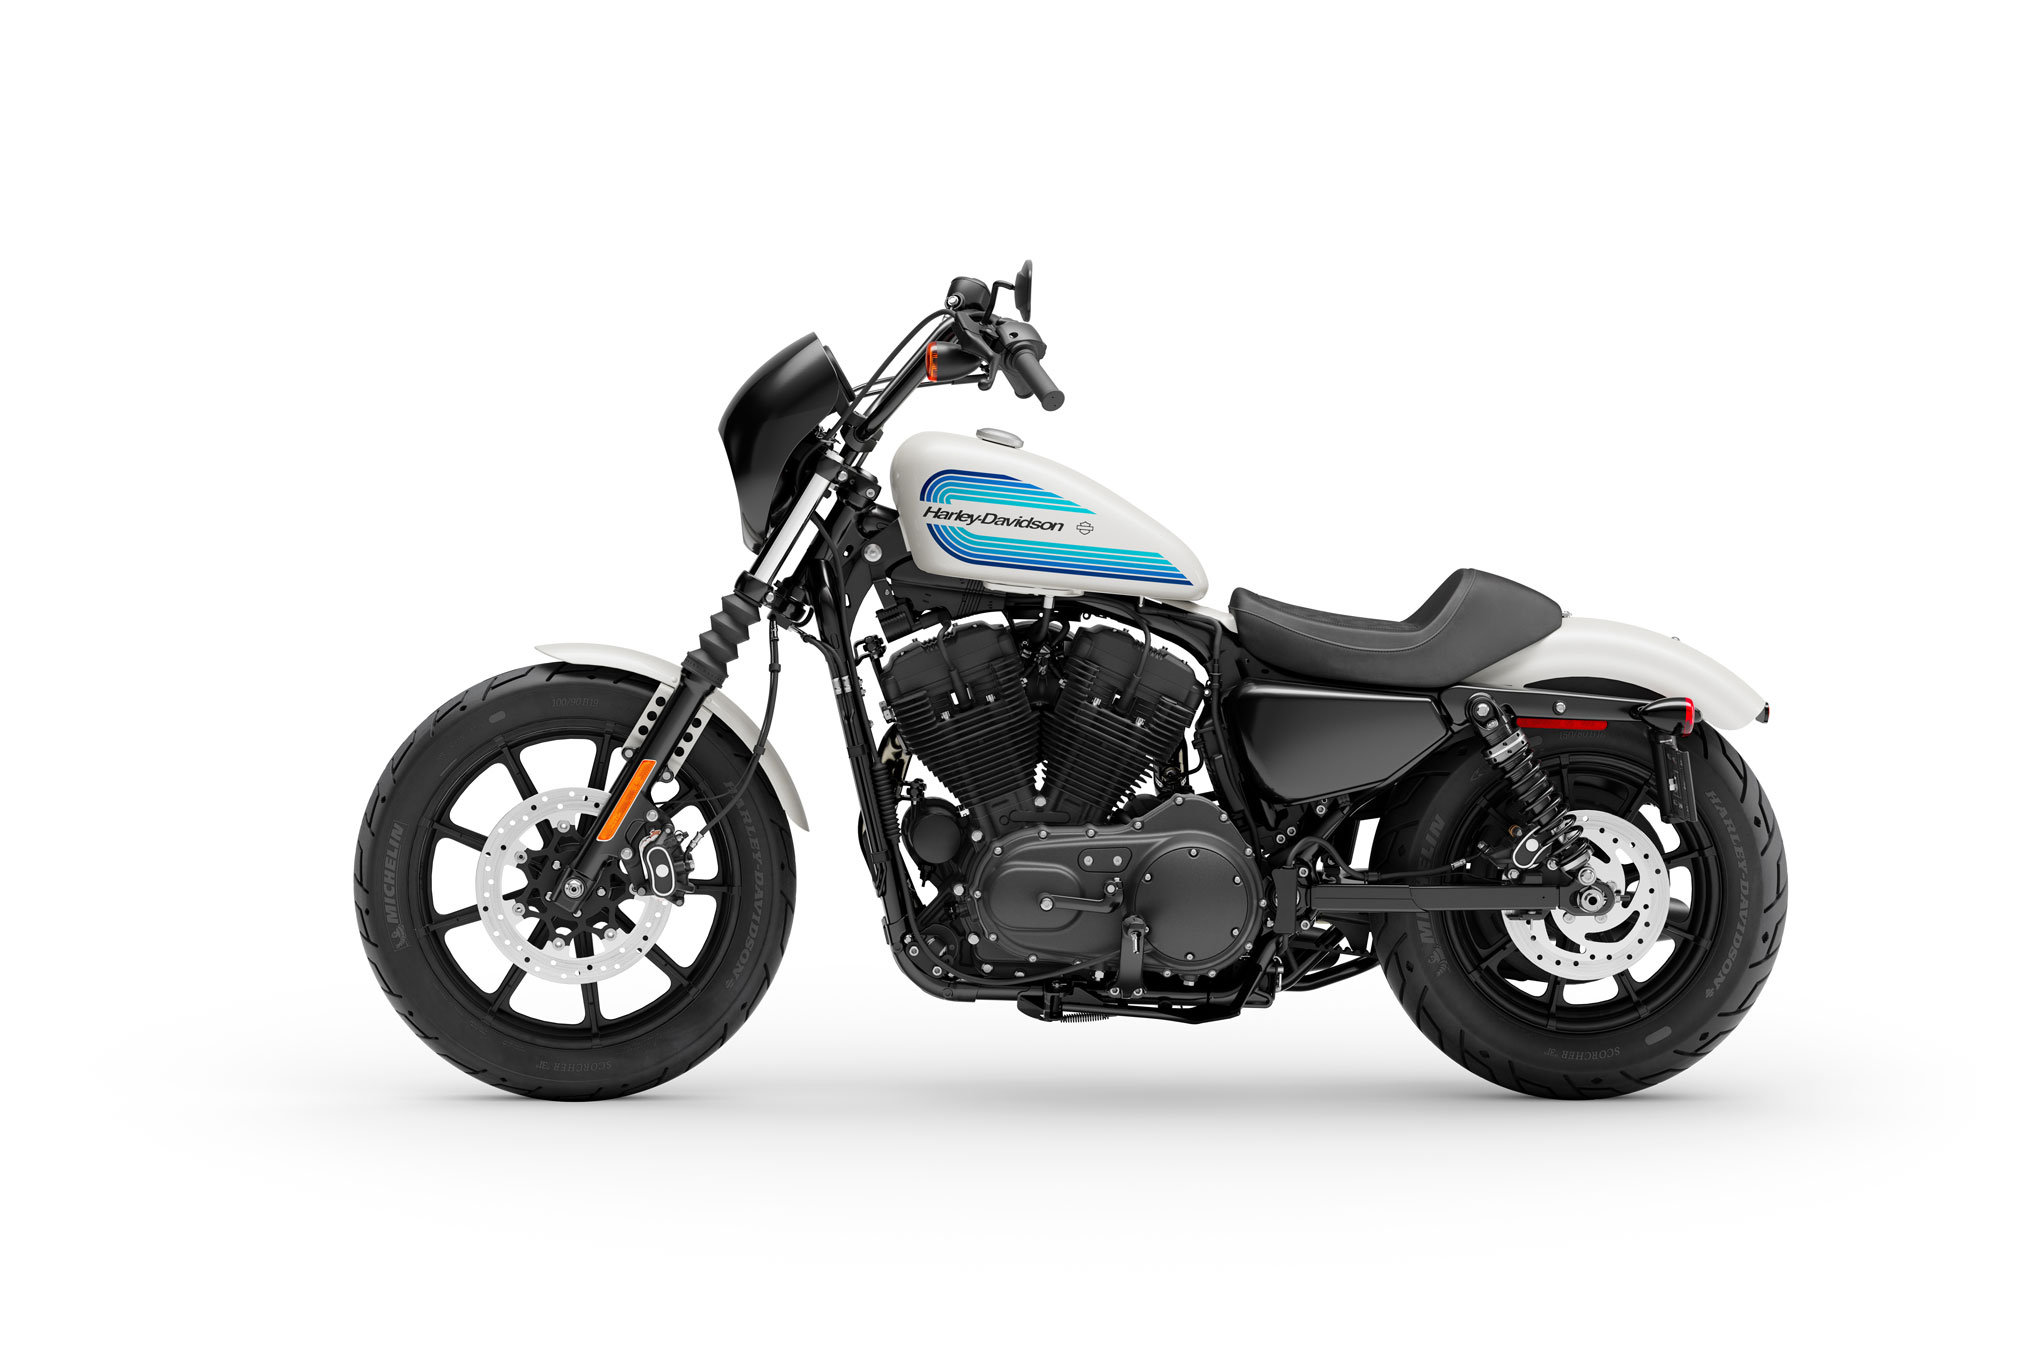 27 Harley Davidson 2019 Iron Yang Populer